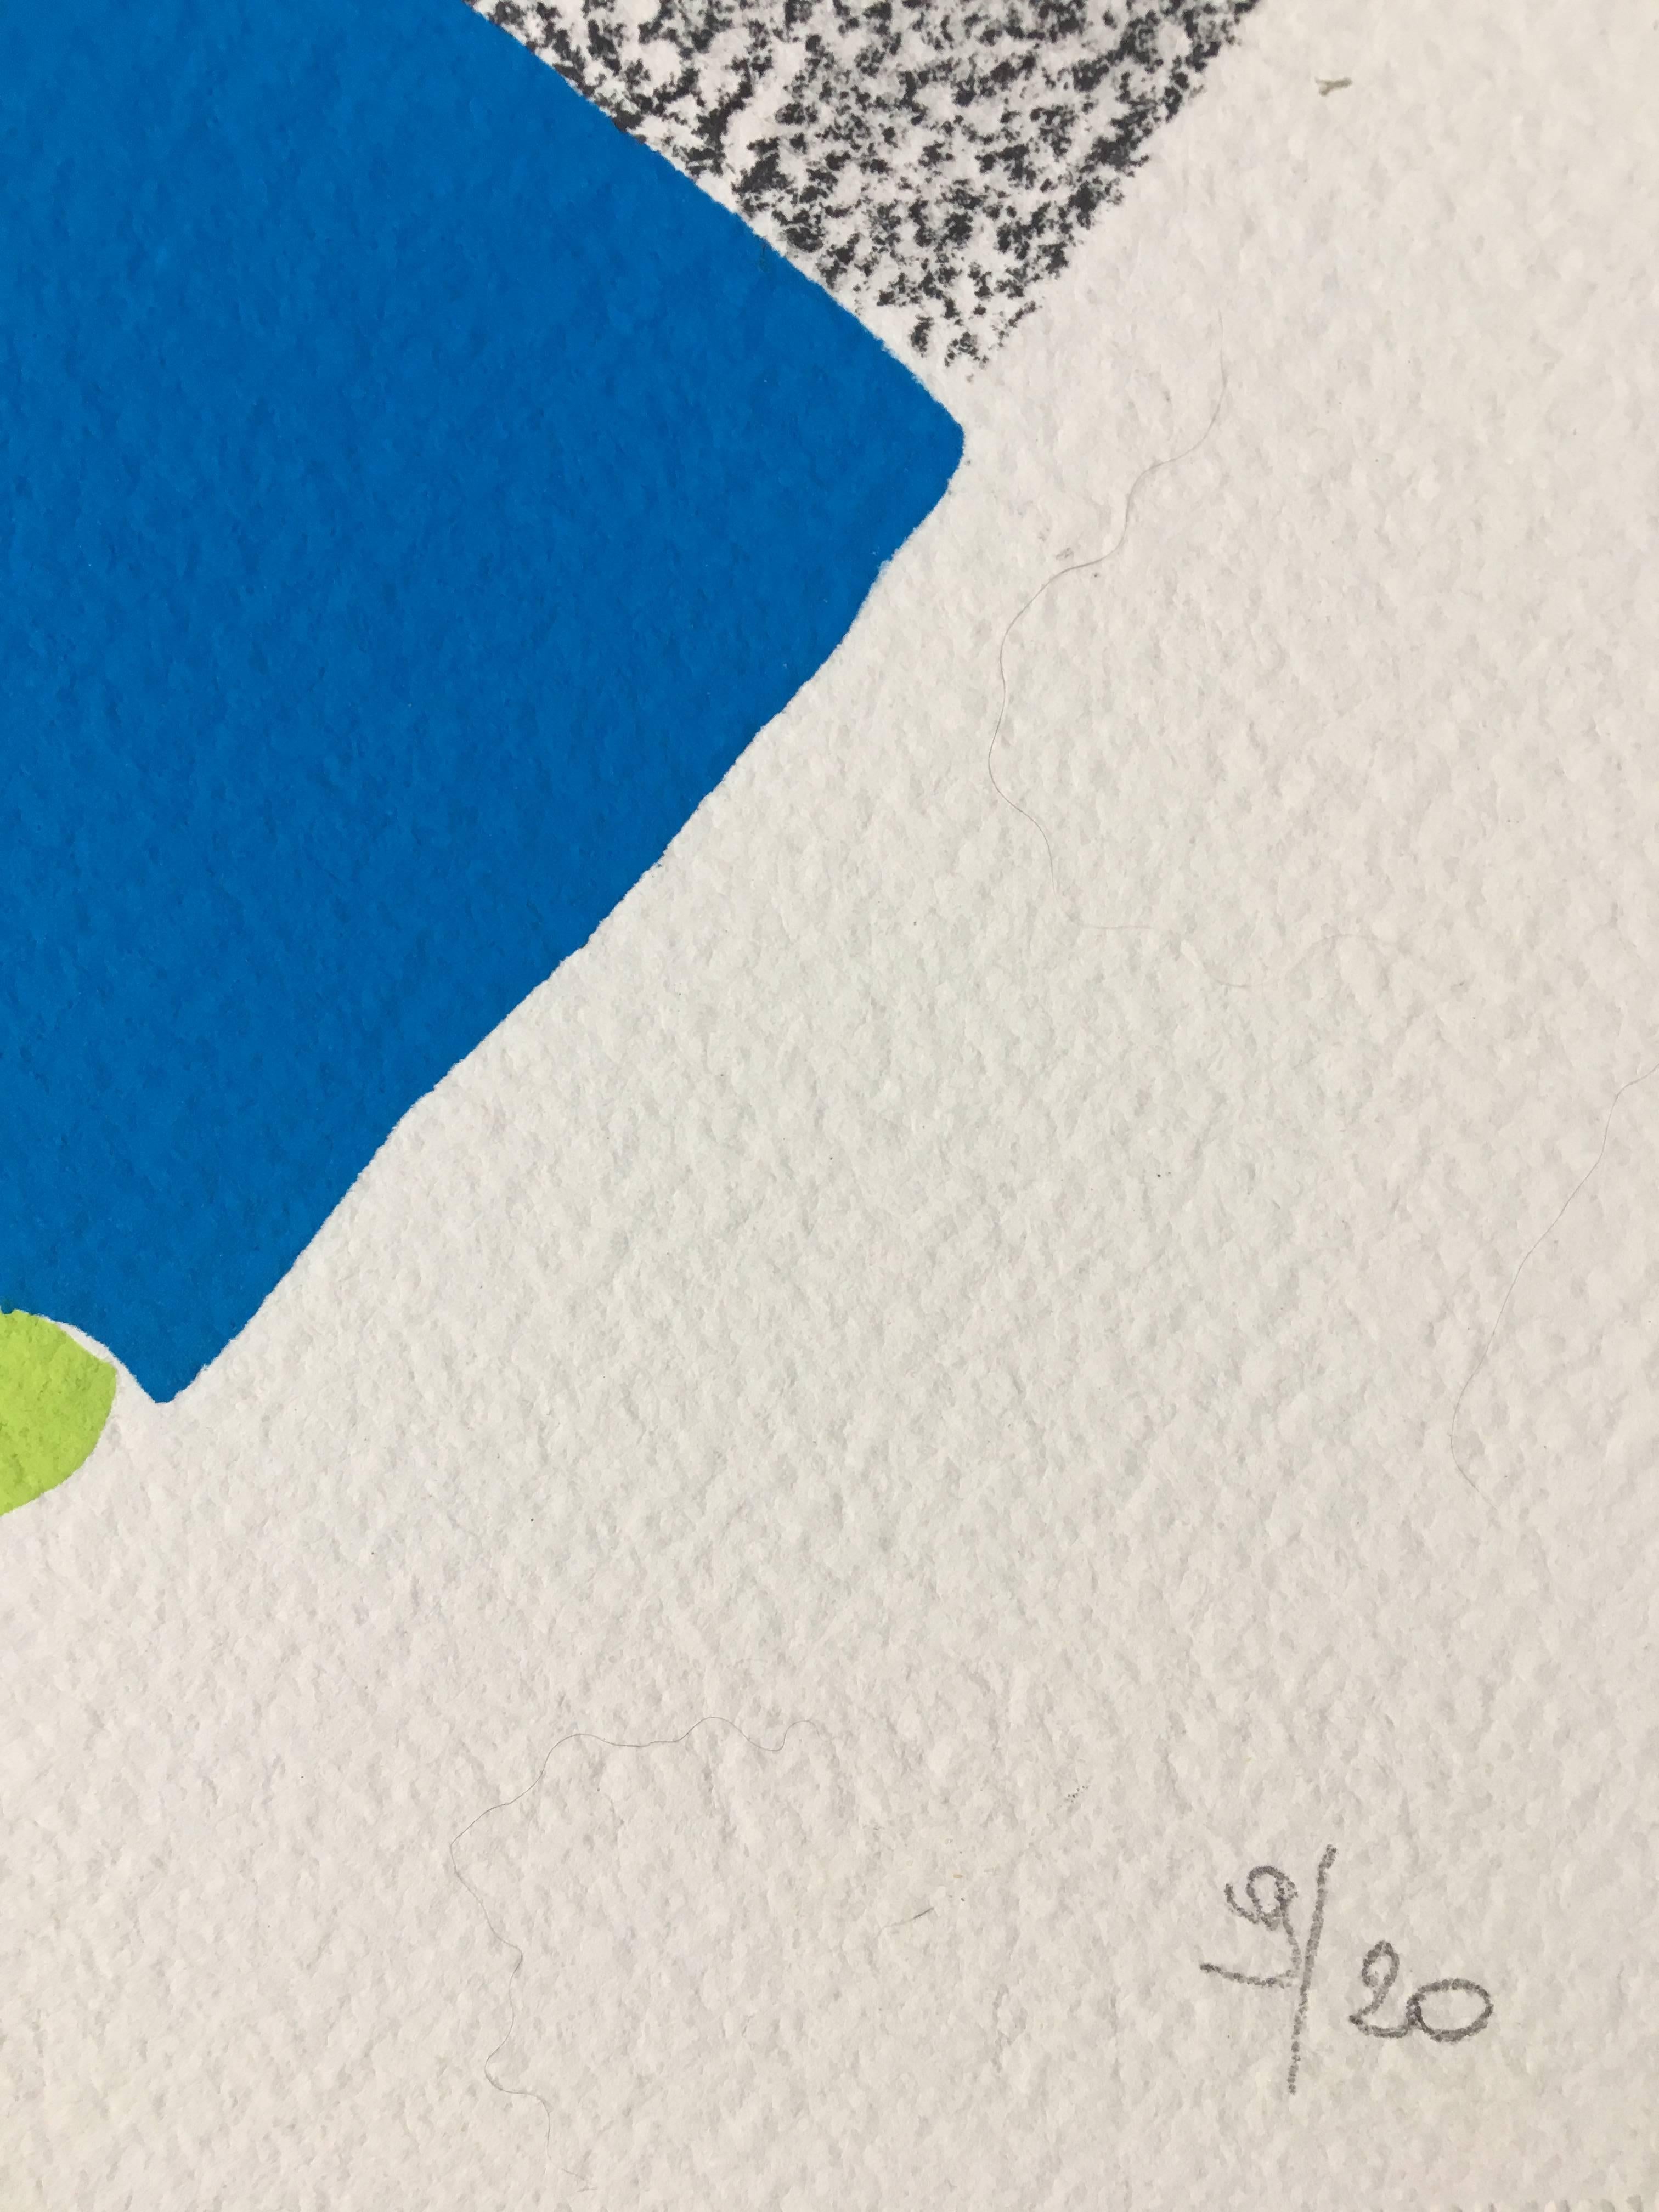 Pochoir vibrant et lumineux sur papier Arches par Sonia Delaunay. Elle est signée et numérotée 9/20 au crayon au recto par l'artiste. Au dos, il est estampillé : Pochoir exécuté à la main, numéroté et signe S.D. (Initiales de l'artiste.)

Ceci est